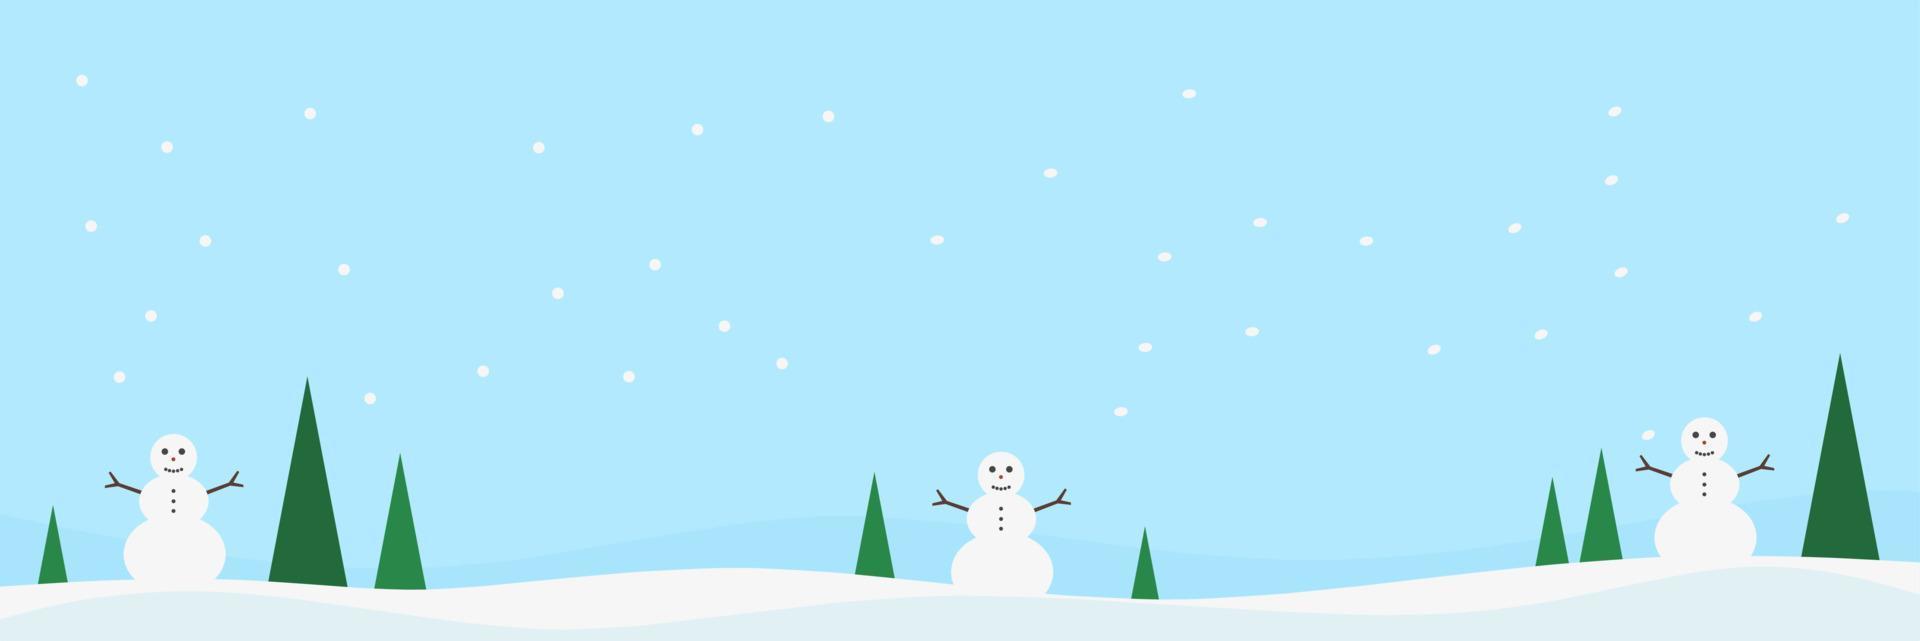 Kerstmis landschap banier met sneeuwman en pijnboom boom voor Kerstmis viering vector